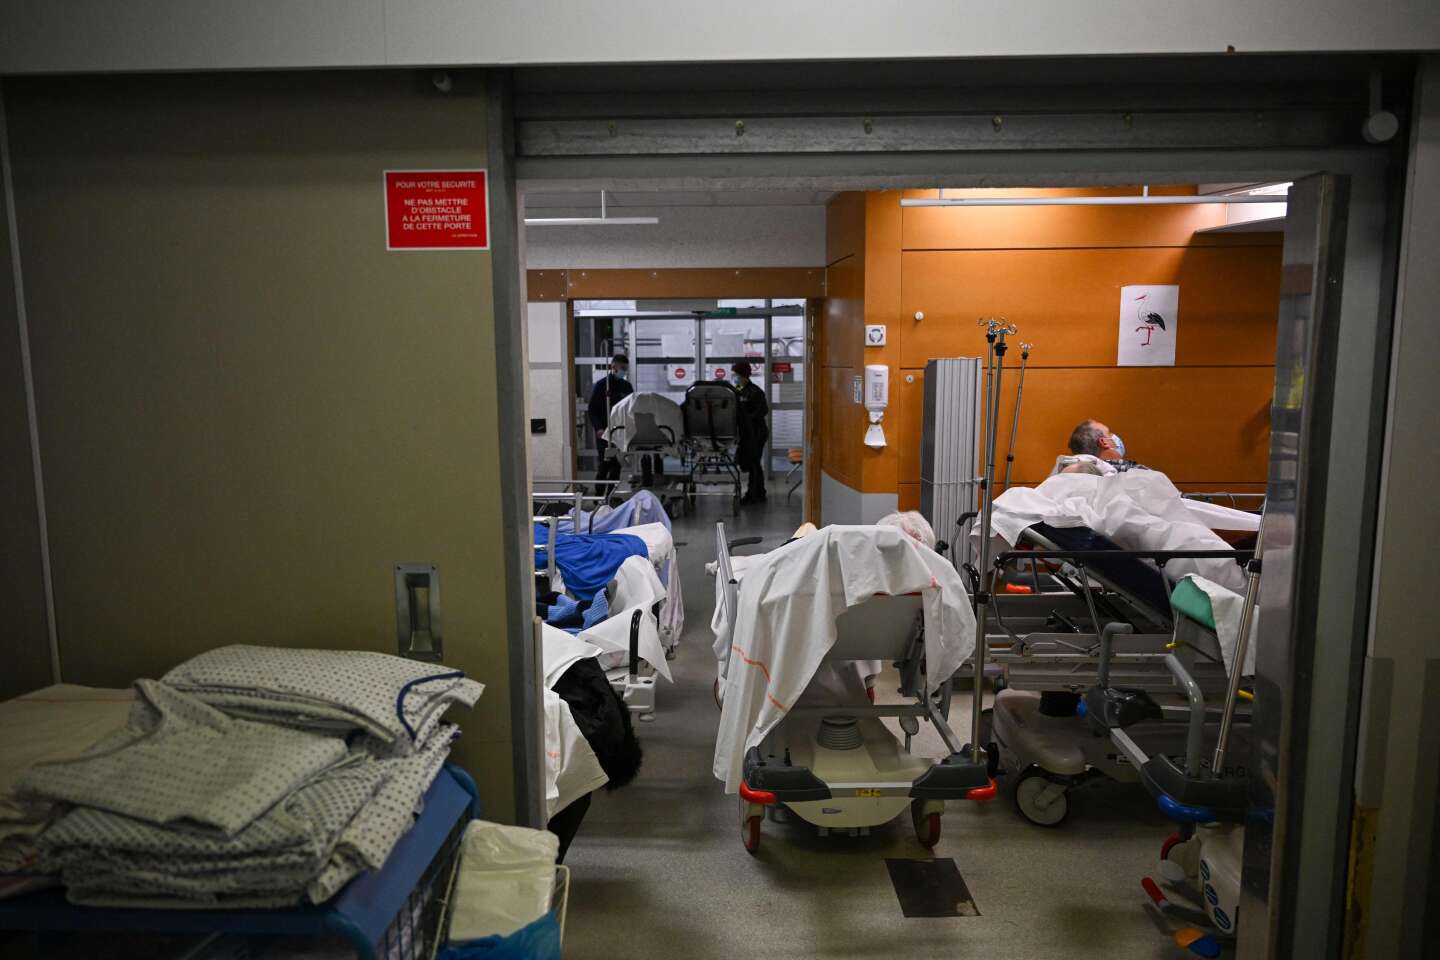 Potrójna epidemia Covid-19, grypy i zapalenia oskrzelików we Francji ustępuje, ale w szpitalach utrzymują się napięcia